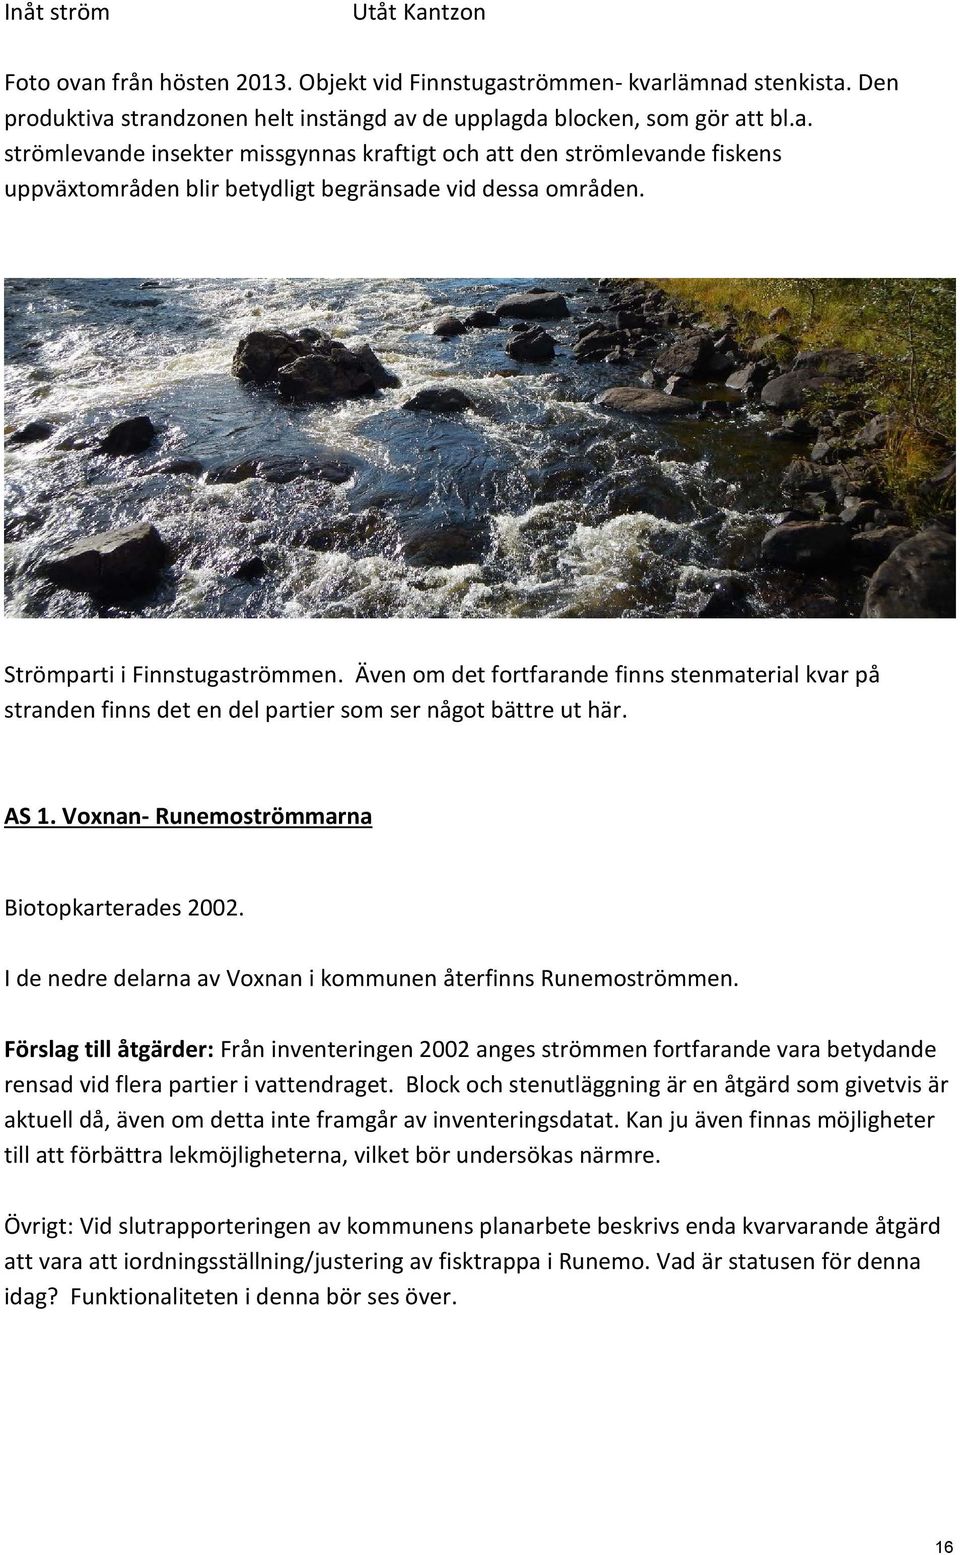 I de nedre delarna av Voxnan i kommunen återfinns Runemoströmmen. Förslag till åtgärder: Från inventeringen 2002 anges strömmen fortfarande vara betydande rensad vid flera partier i vattendraget.